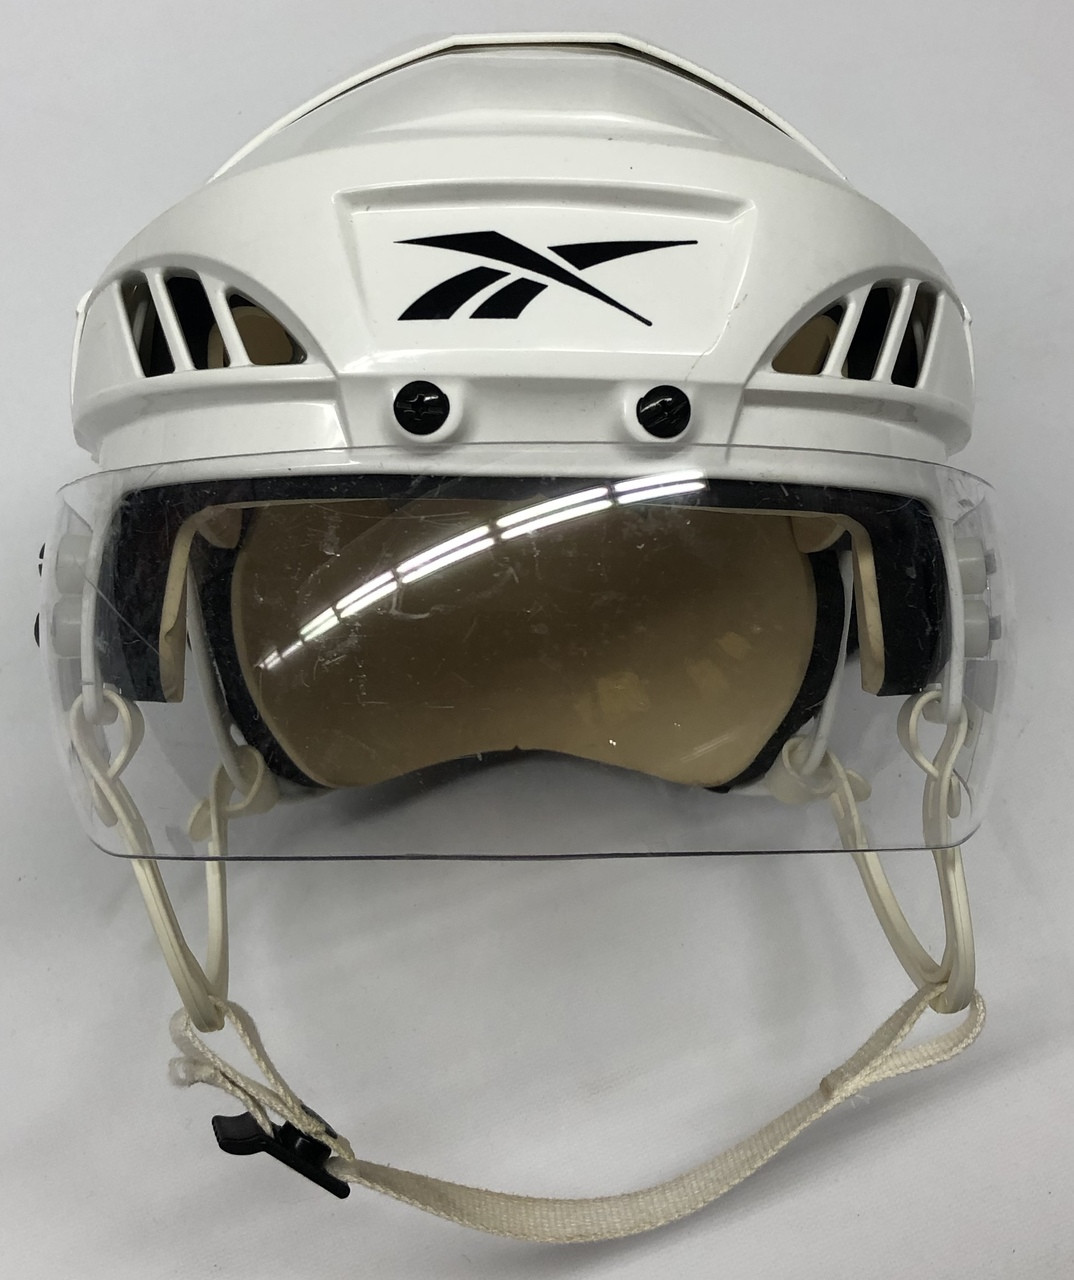 reebok 4k helmet review